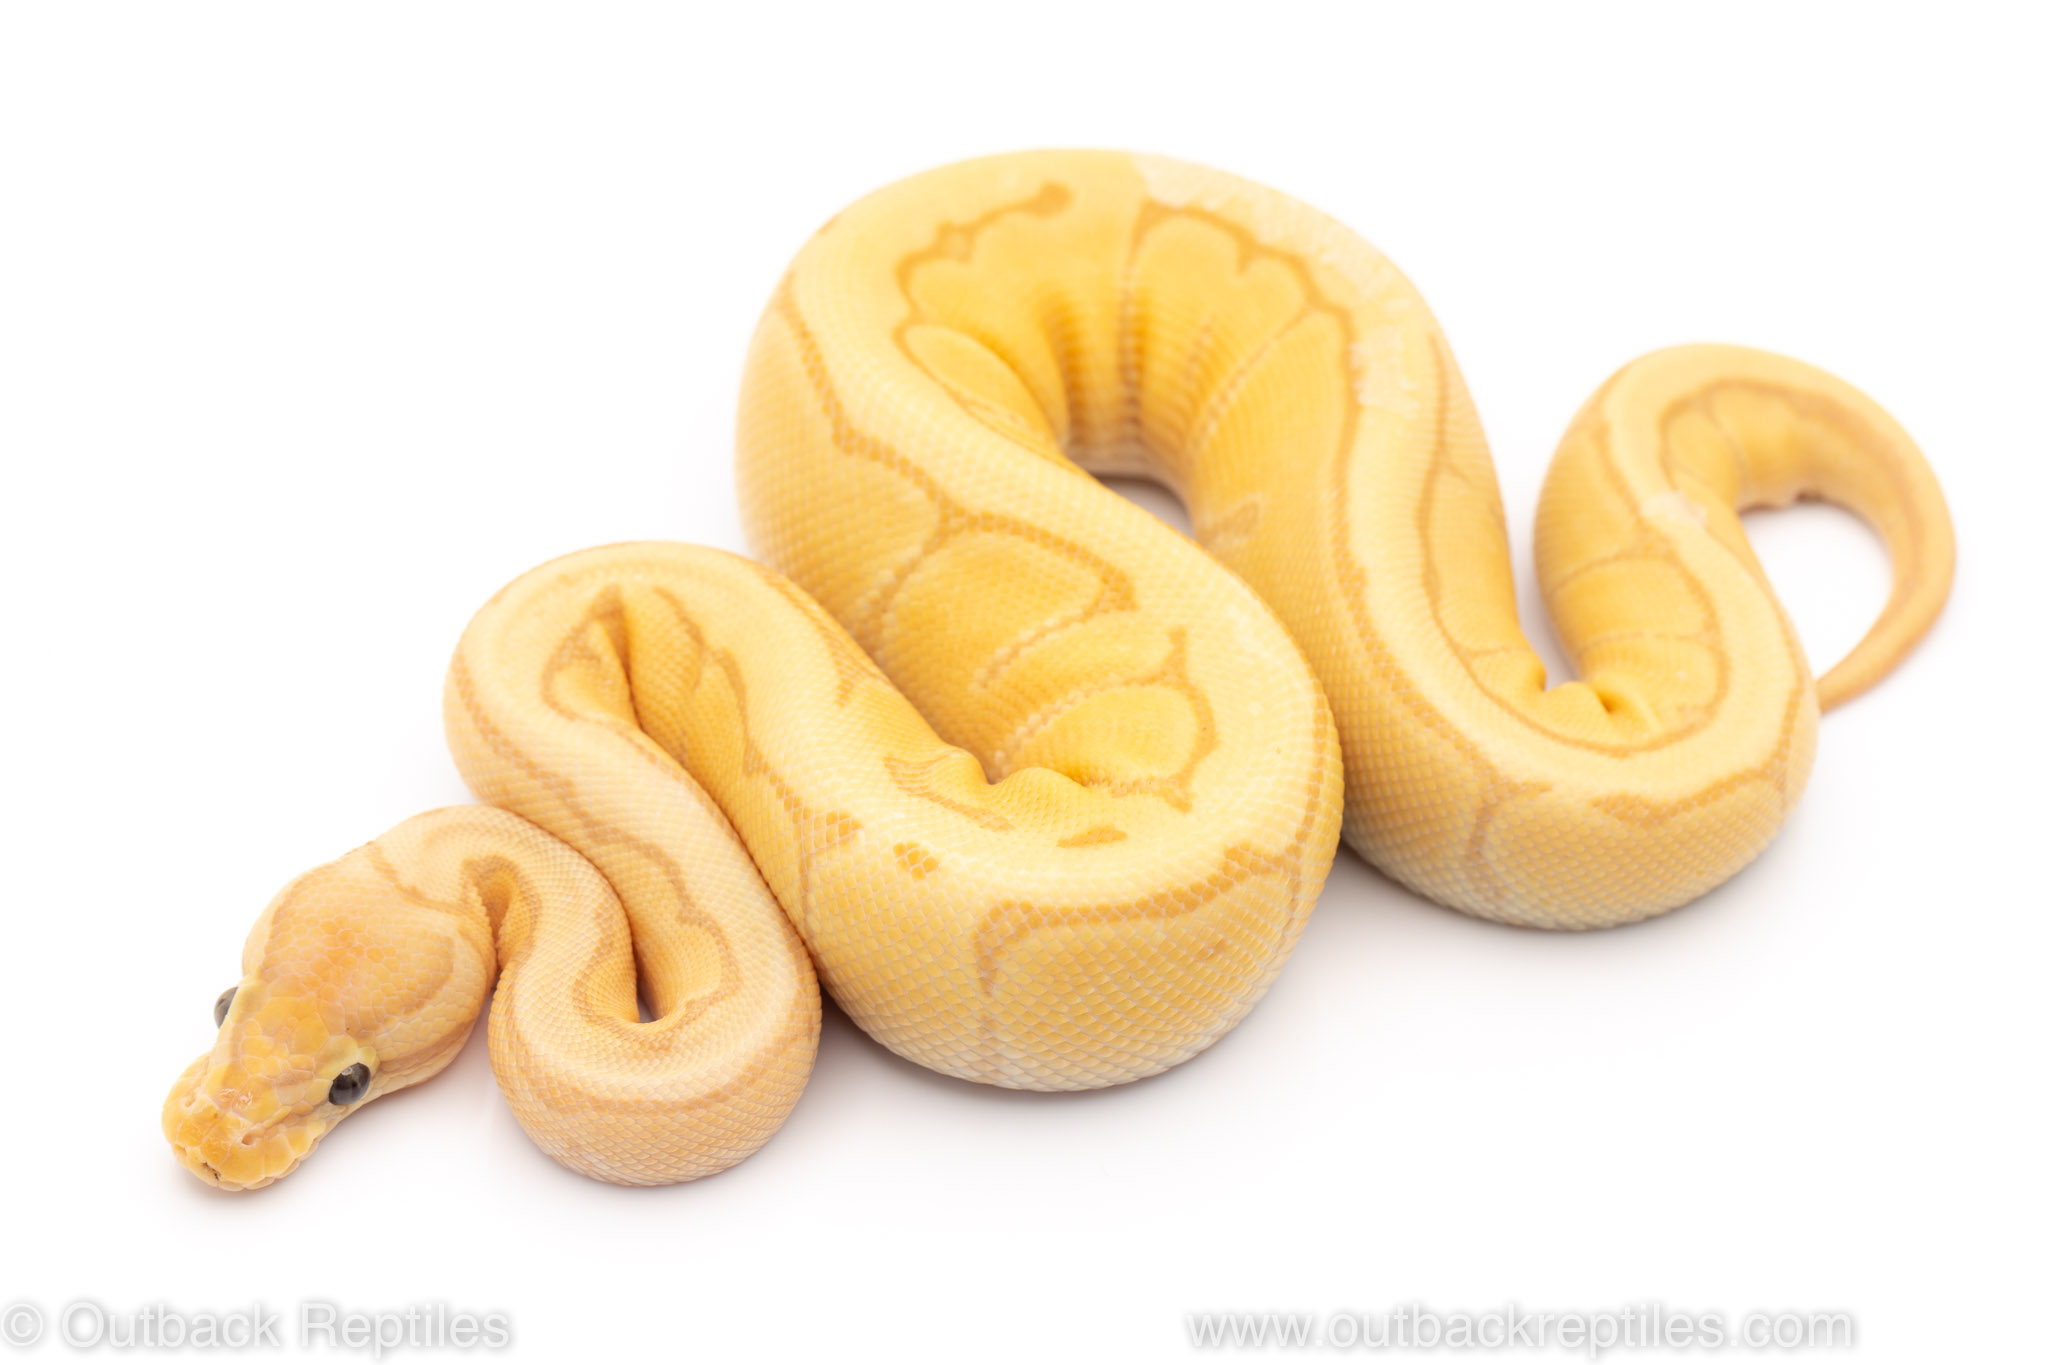 Banana Pinstripe ball python for sale